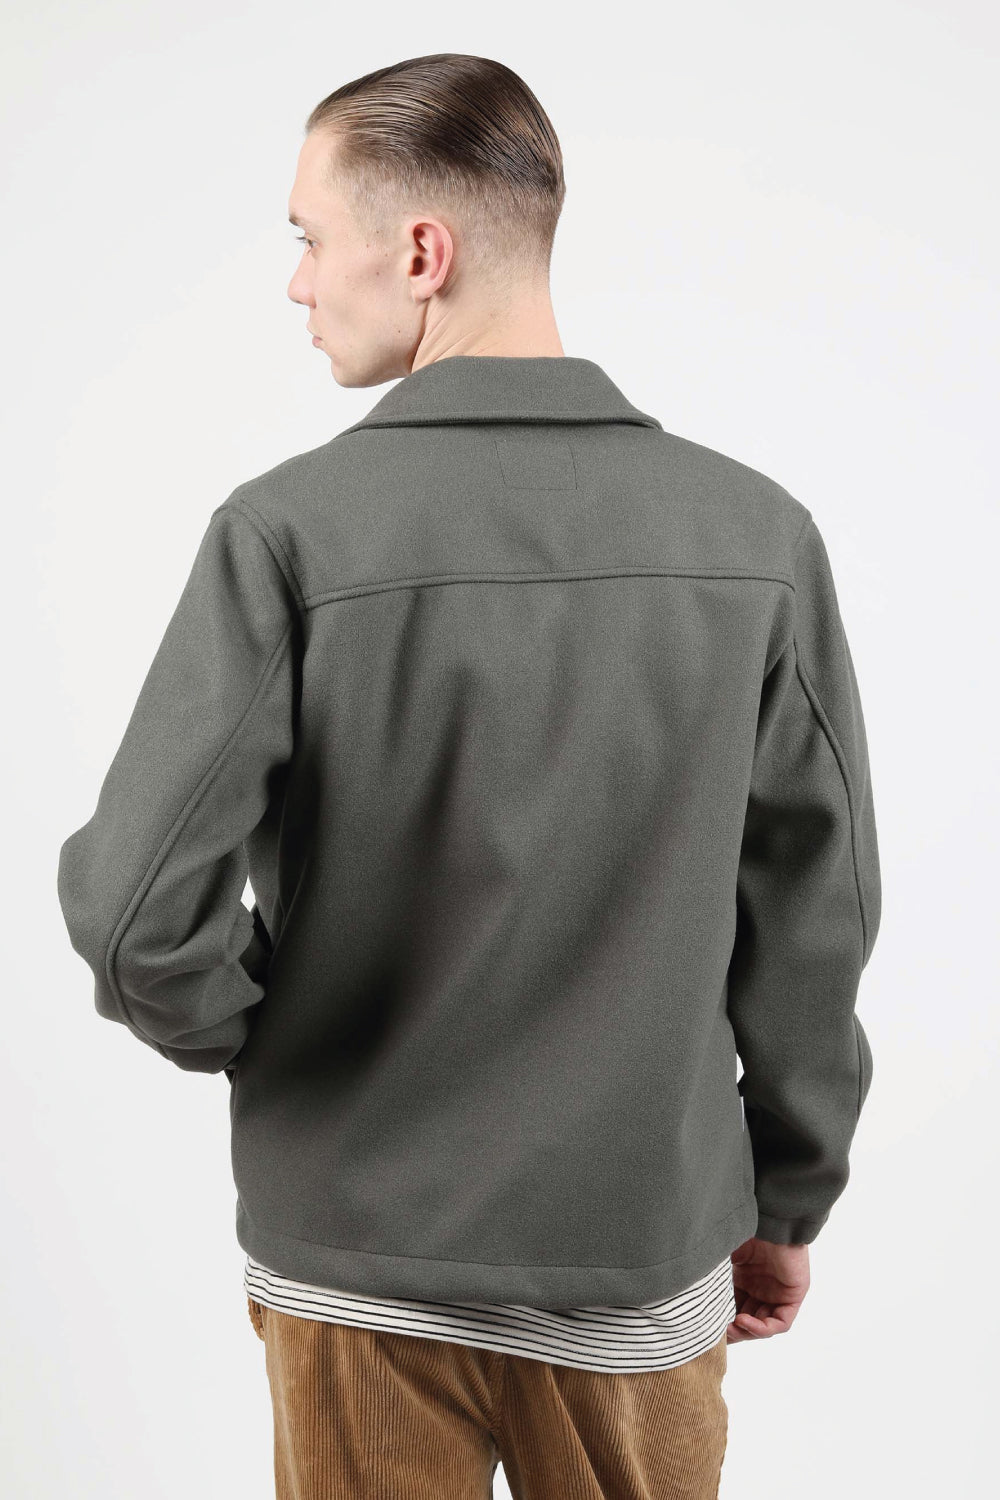 chaqueta de corte regular con cierre de botones, bolsillo interior y dos exteriores en color verde salvia